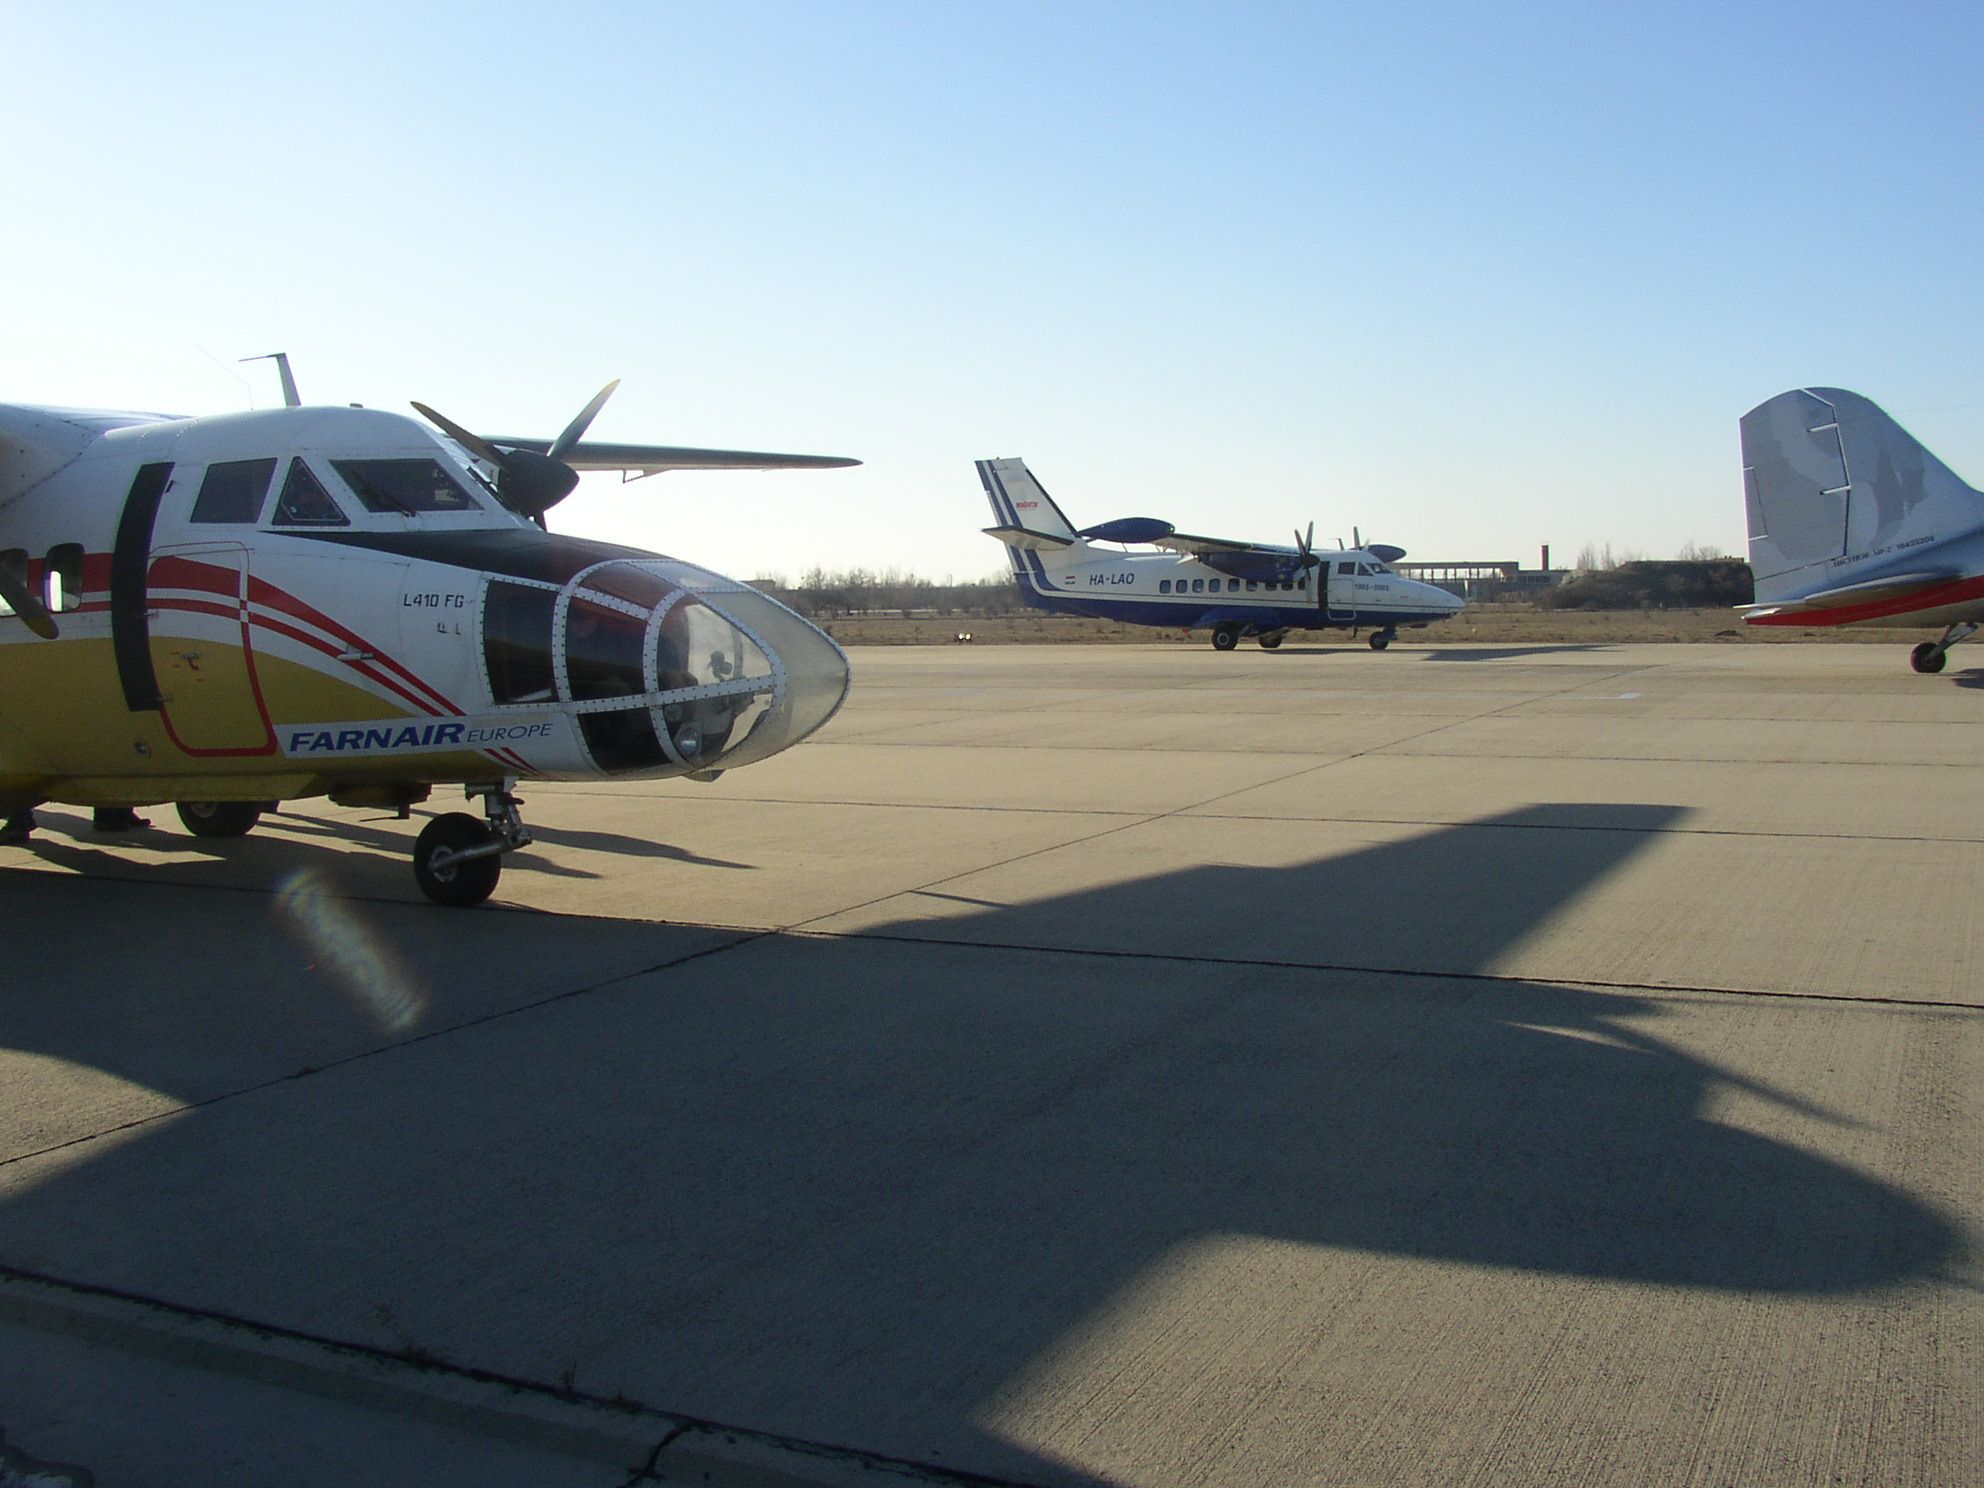 A HA-LAO a HA-YFC-vel és a HA-LIX-el együtt a motoros repülés 100. évfordulója alkalmából rendezett repülésen felszállás előtt Tökölön